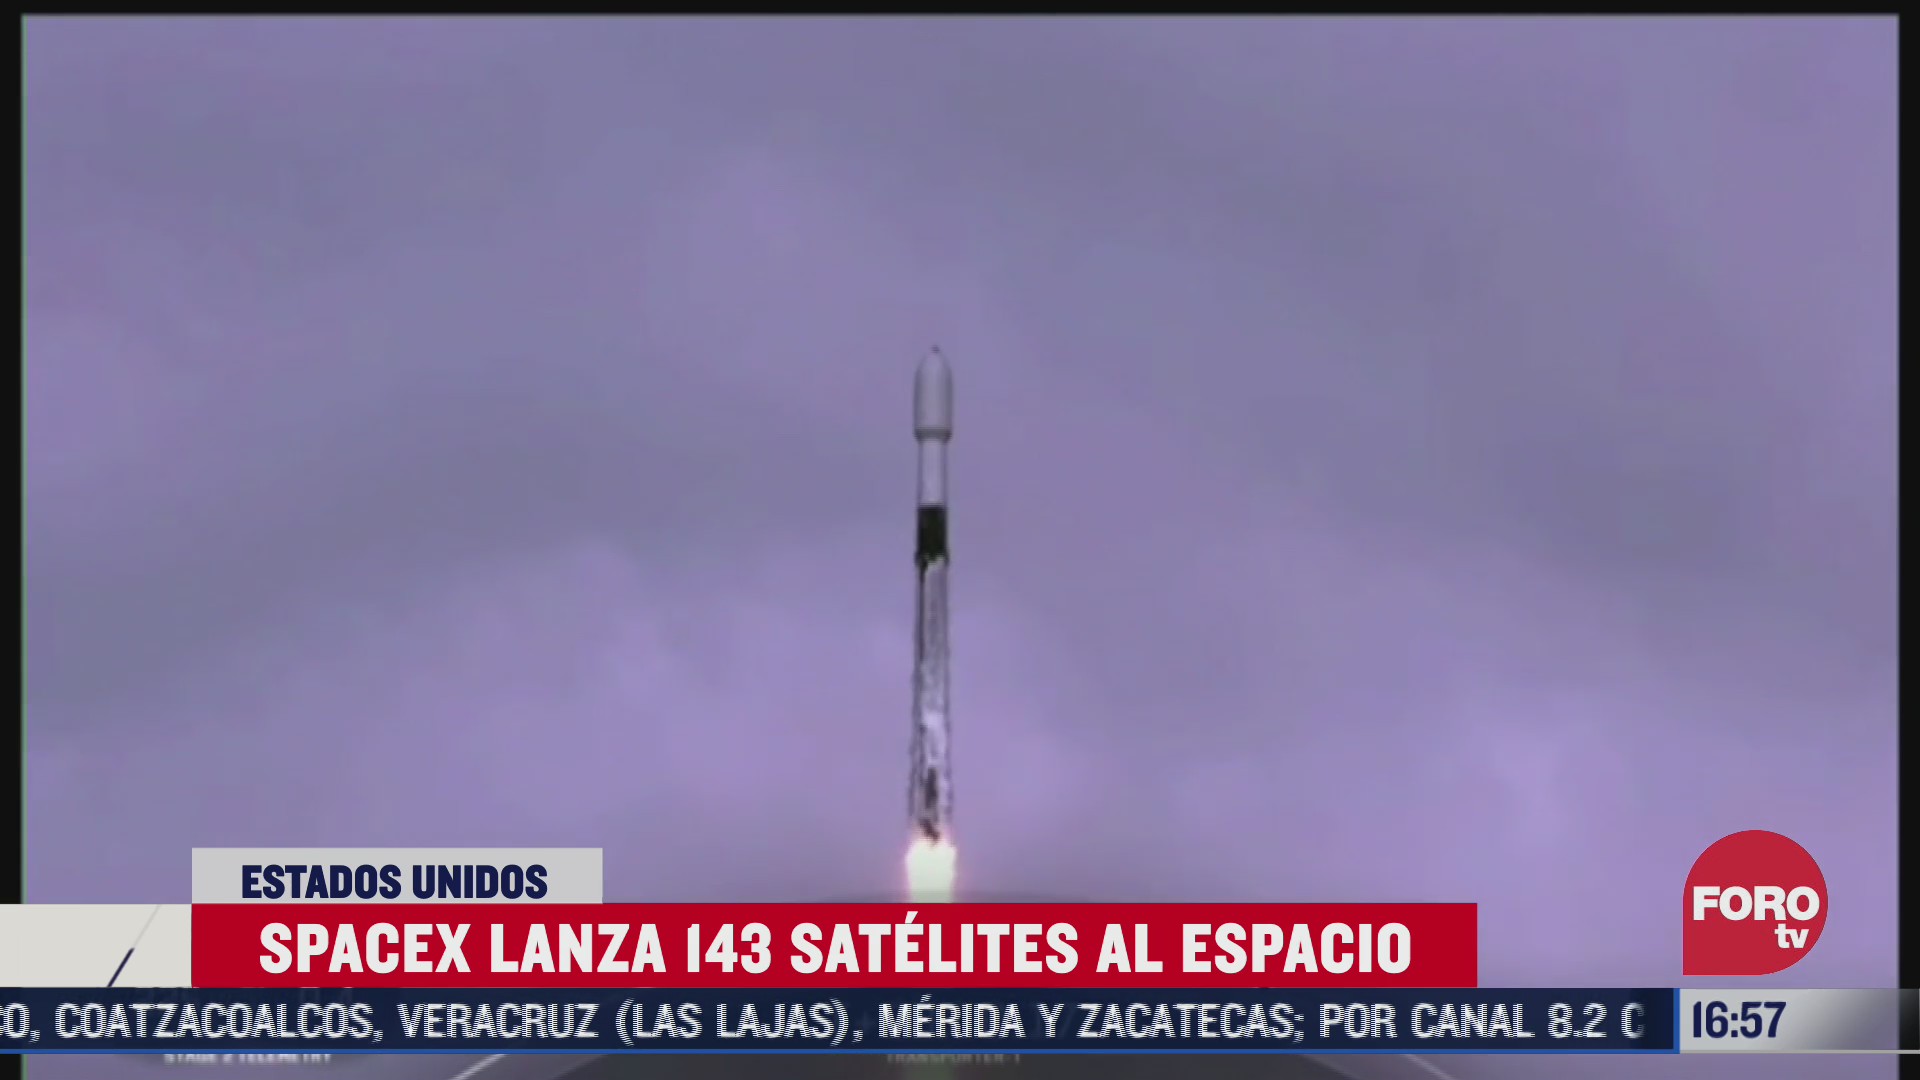 spacex lanza 143 satelites al espacio en eeuu